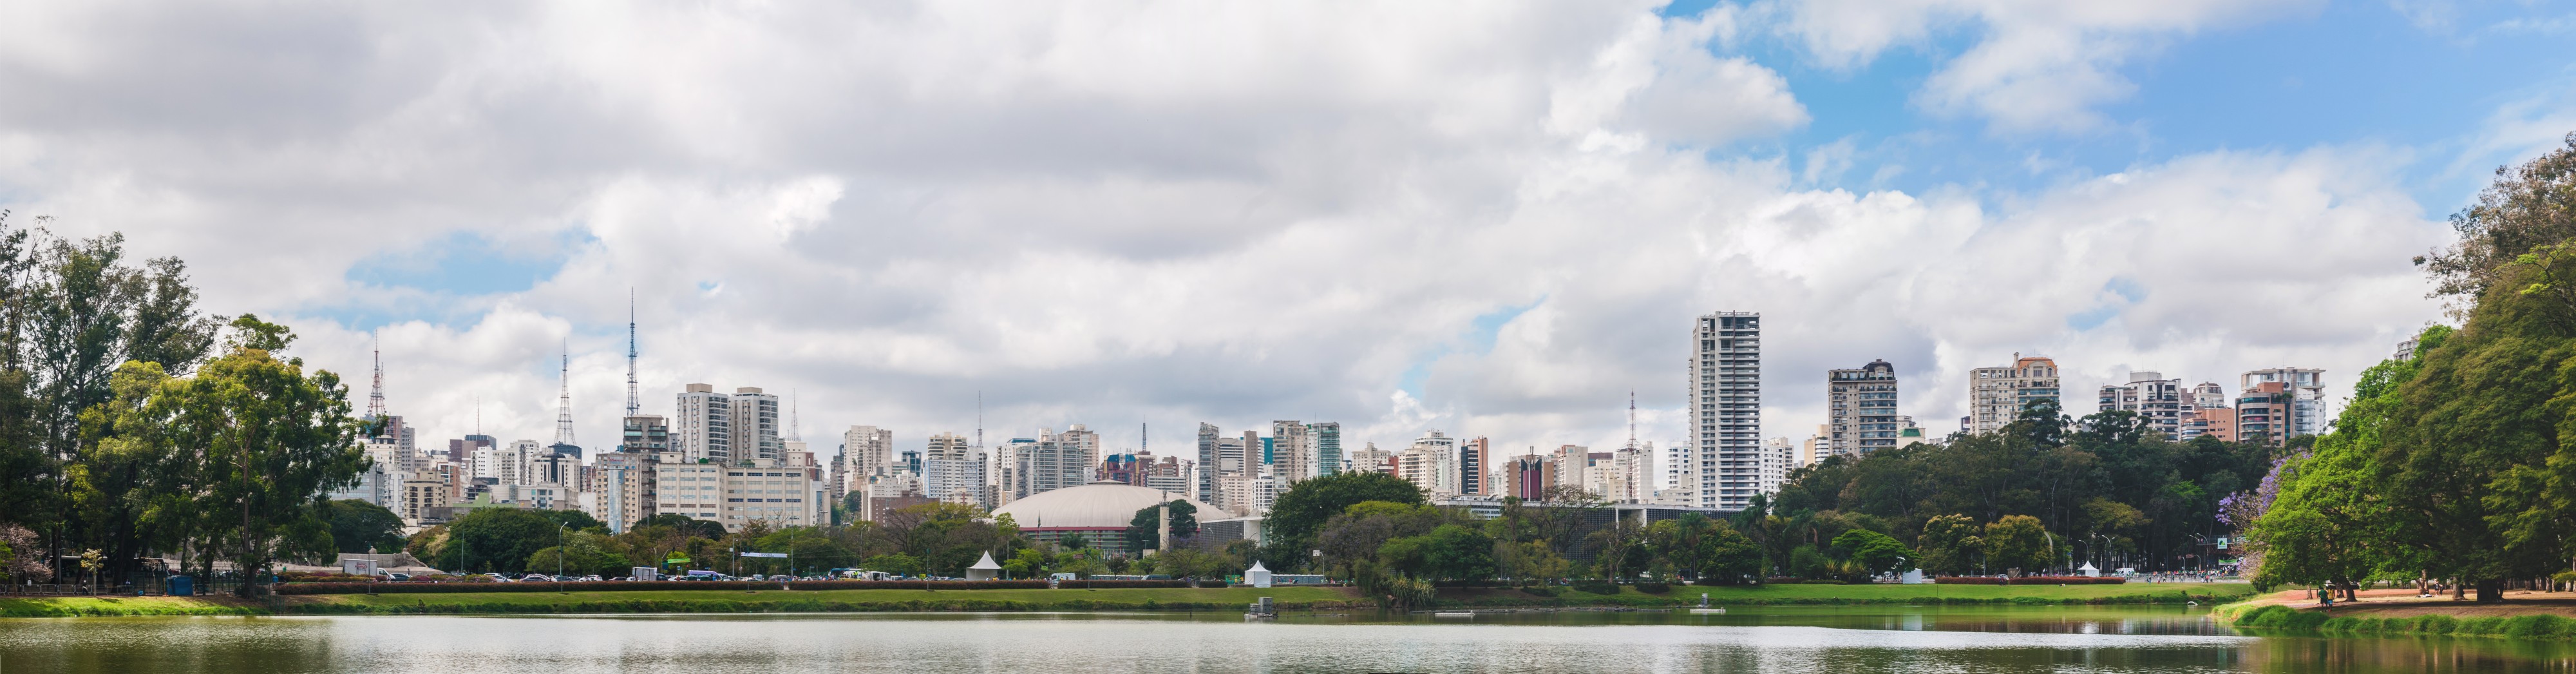 Panoramic view of Ibirapuera Park, São Paulo, Brazil